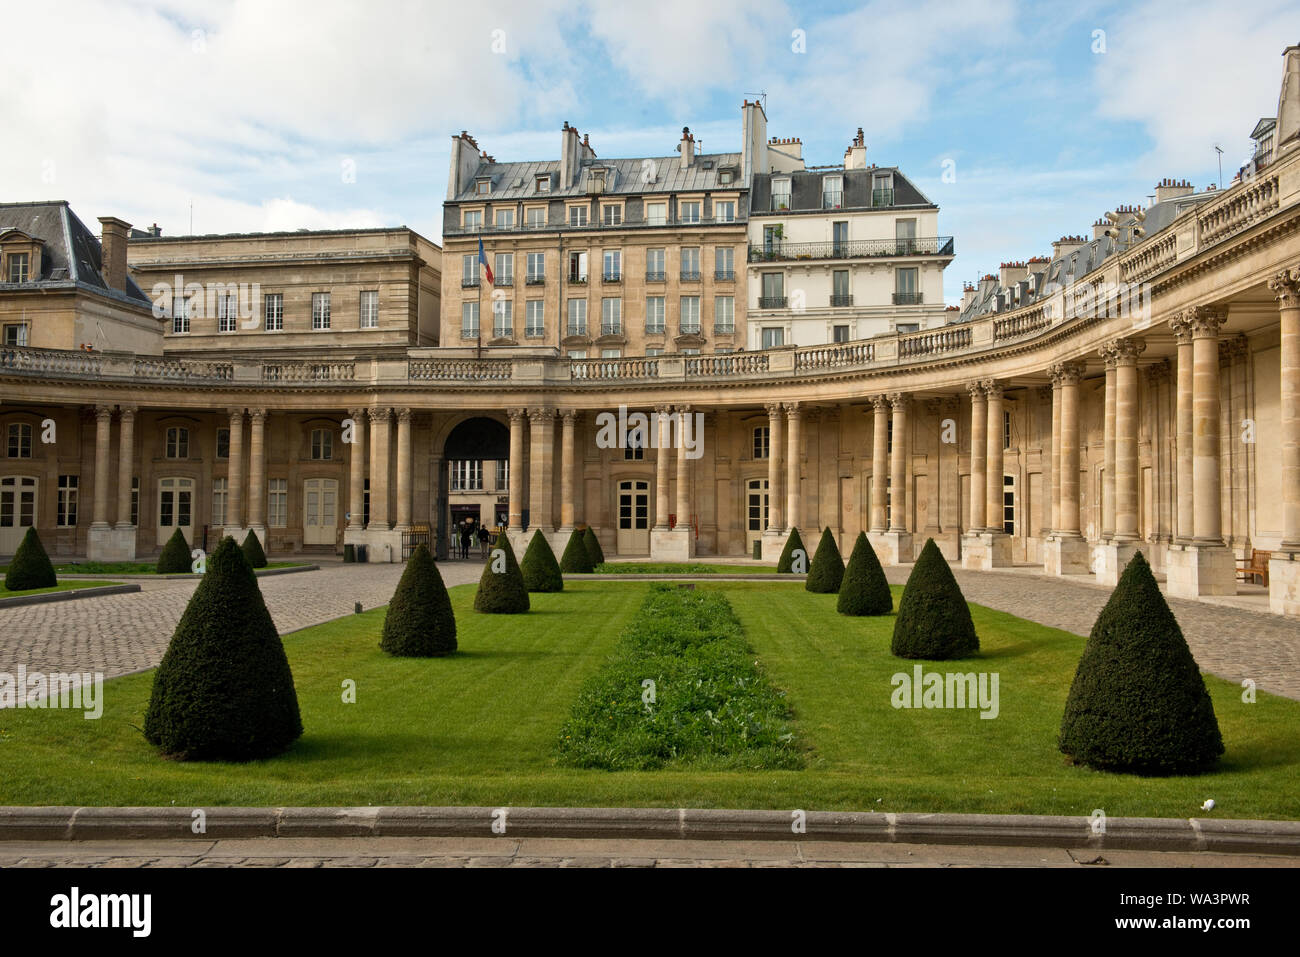 Jardins de l'hôtel de Soubise (Archives nationales) à Paris Banque D'Images